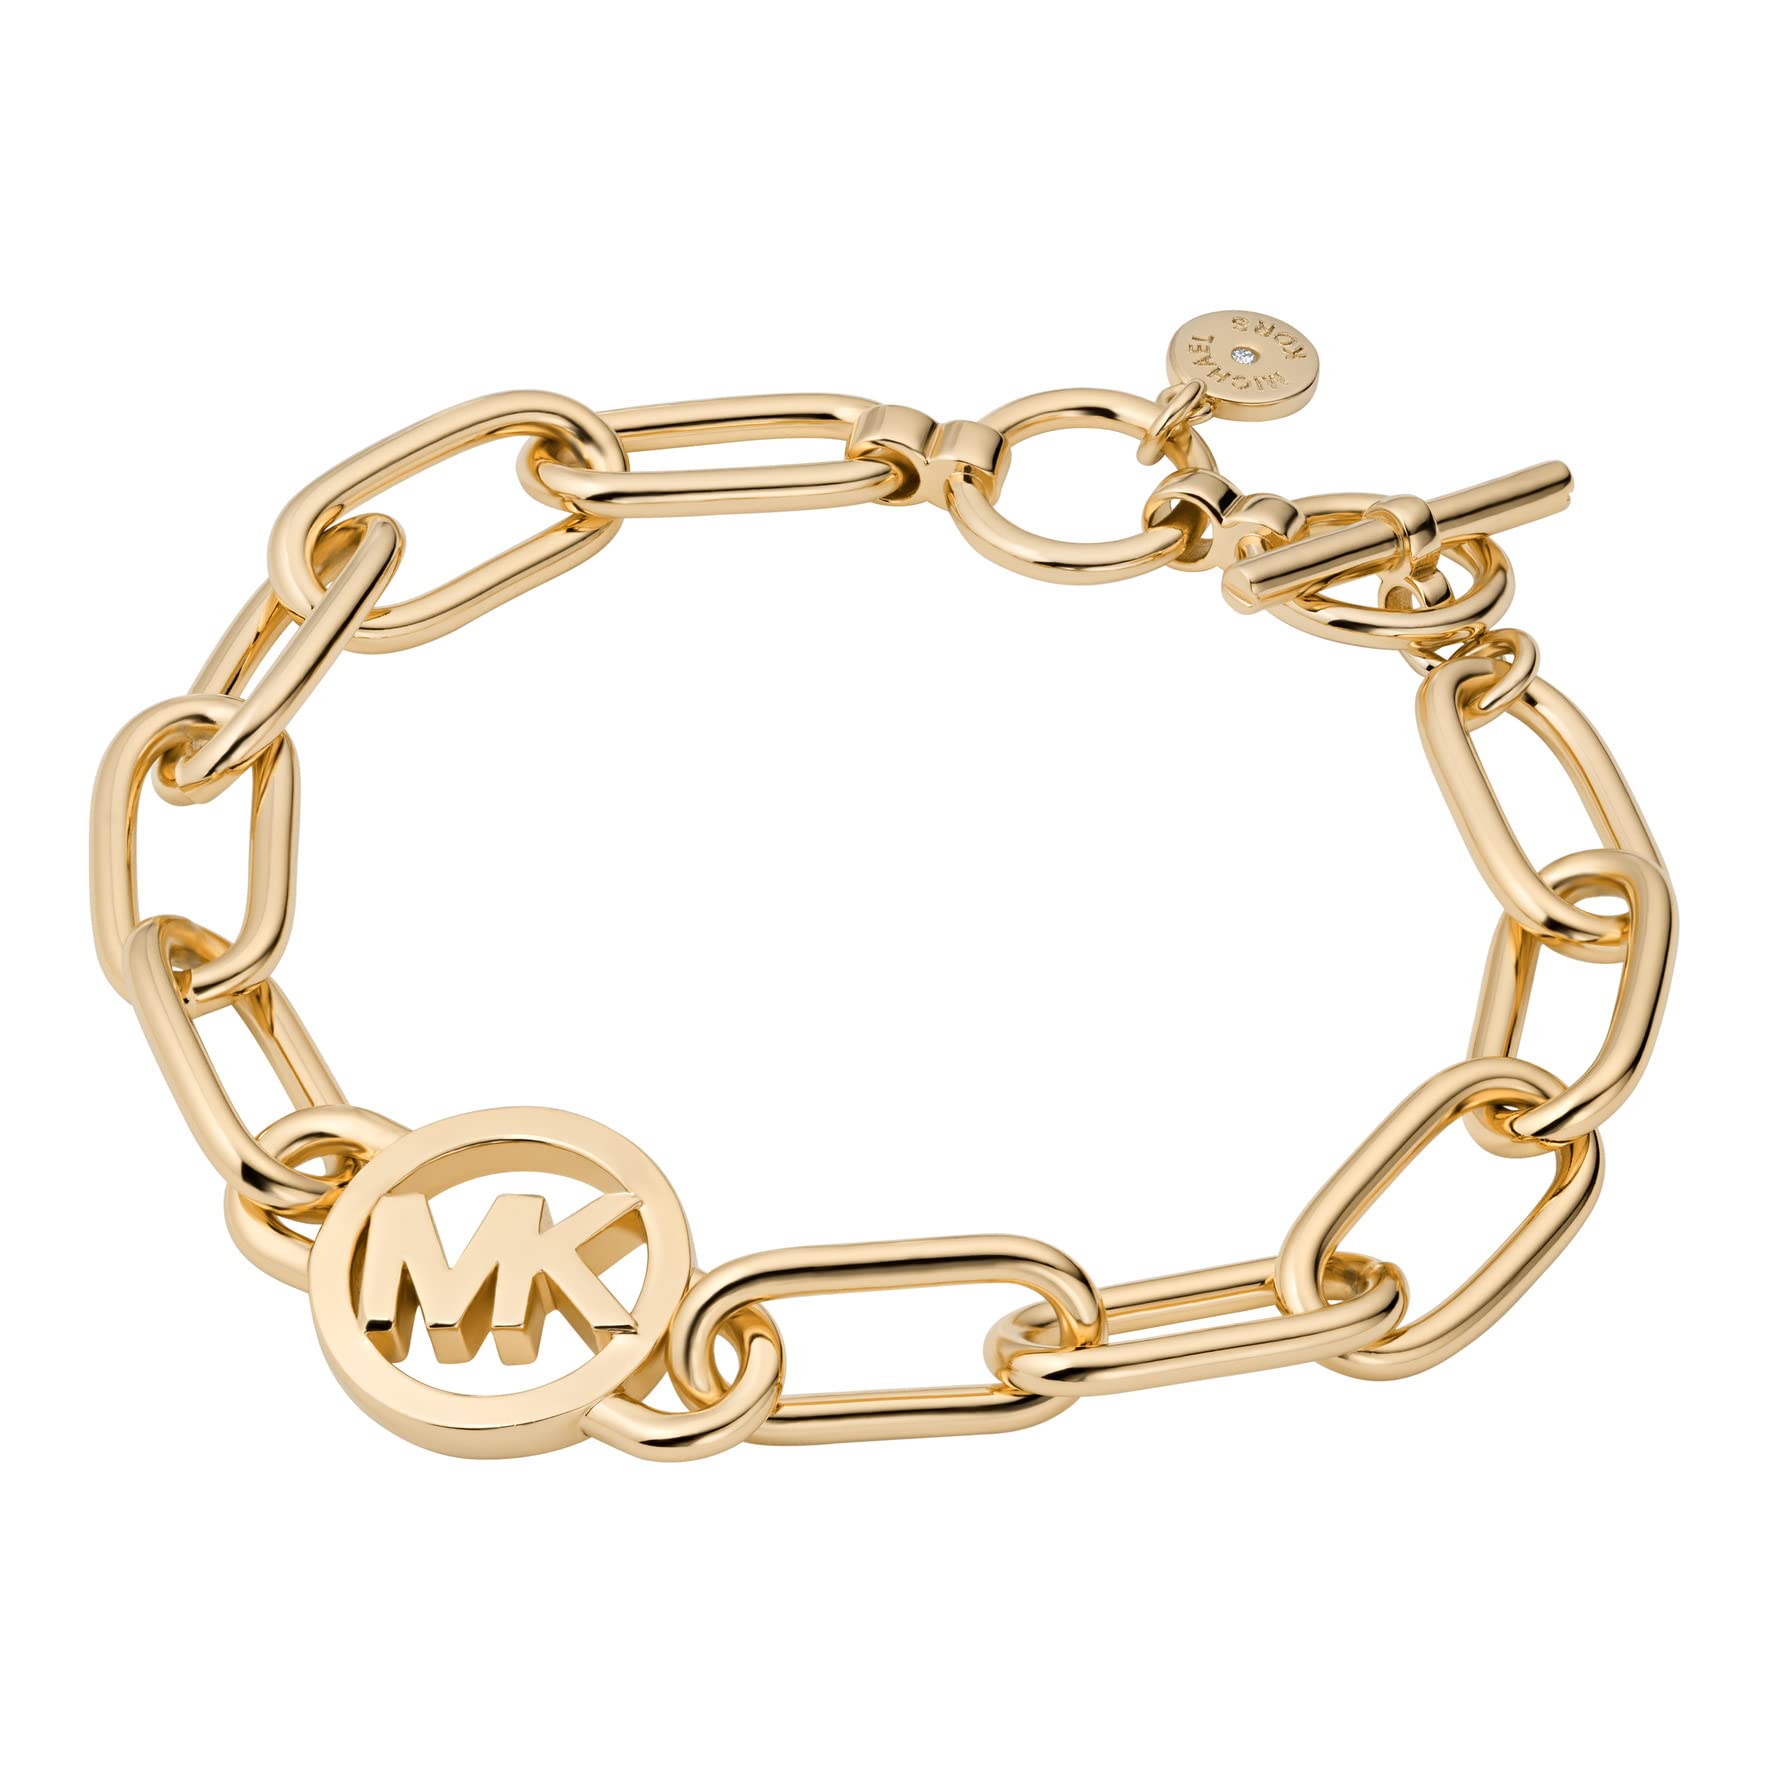 Michael Kors Womens Bradshaw SilverTone Stainless Steel Bracelet Watch  36mm  Macys